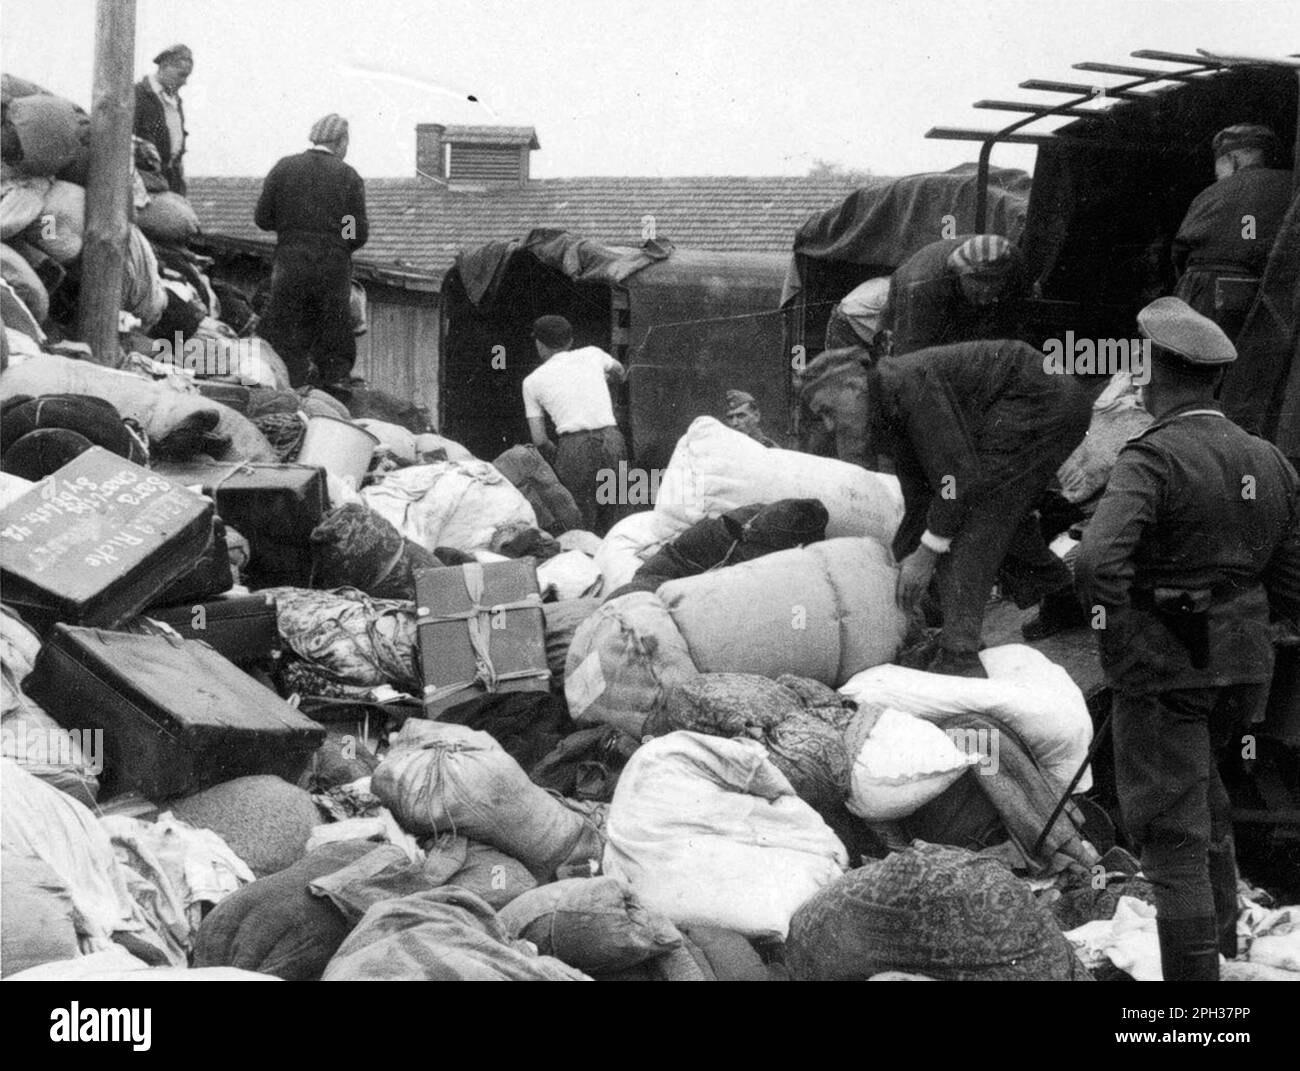 La caserma 'Kanada' nel campo di concentramento di Auschwitz, Polonia occupata dai tedeschi, durante l'Olocausto. I prigionieri ordinano i casi e le borse di coloro che sono stati inviati alla camera a gas all'arrivo. I magazzini sono stati chiamati 'Kanada' perché contenevano gli effetti saccheggiati dei prigionieri e sono stati considerati all'interno del campo come la terra di abbondanza. Foto Stock